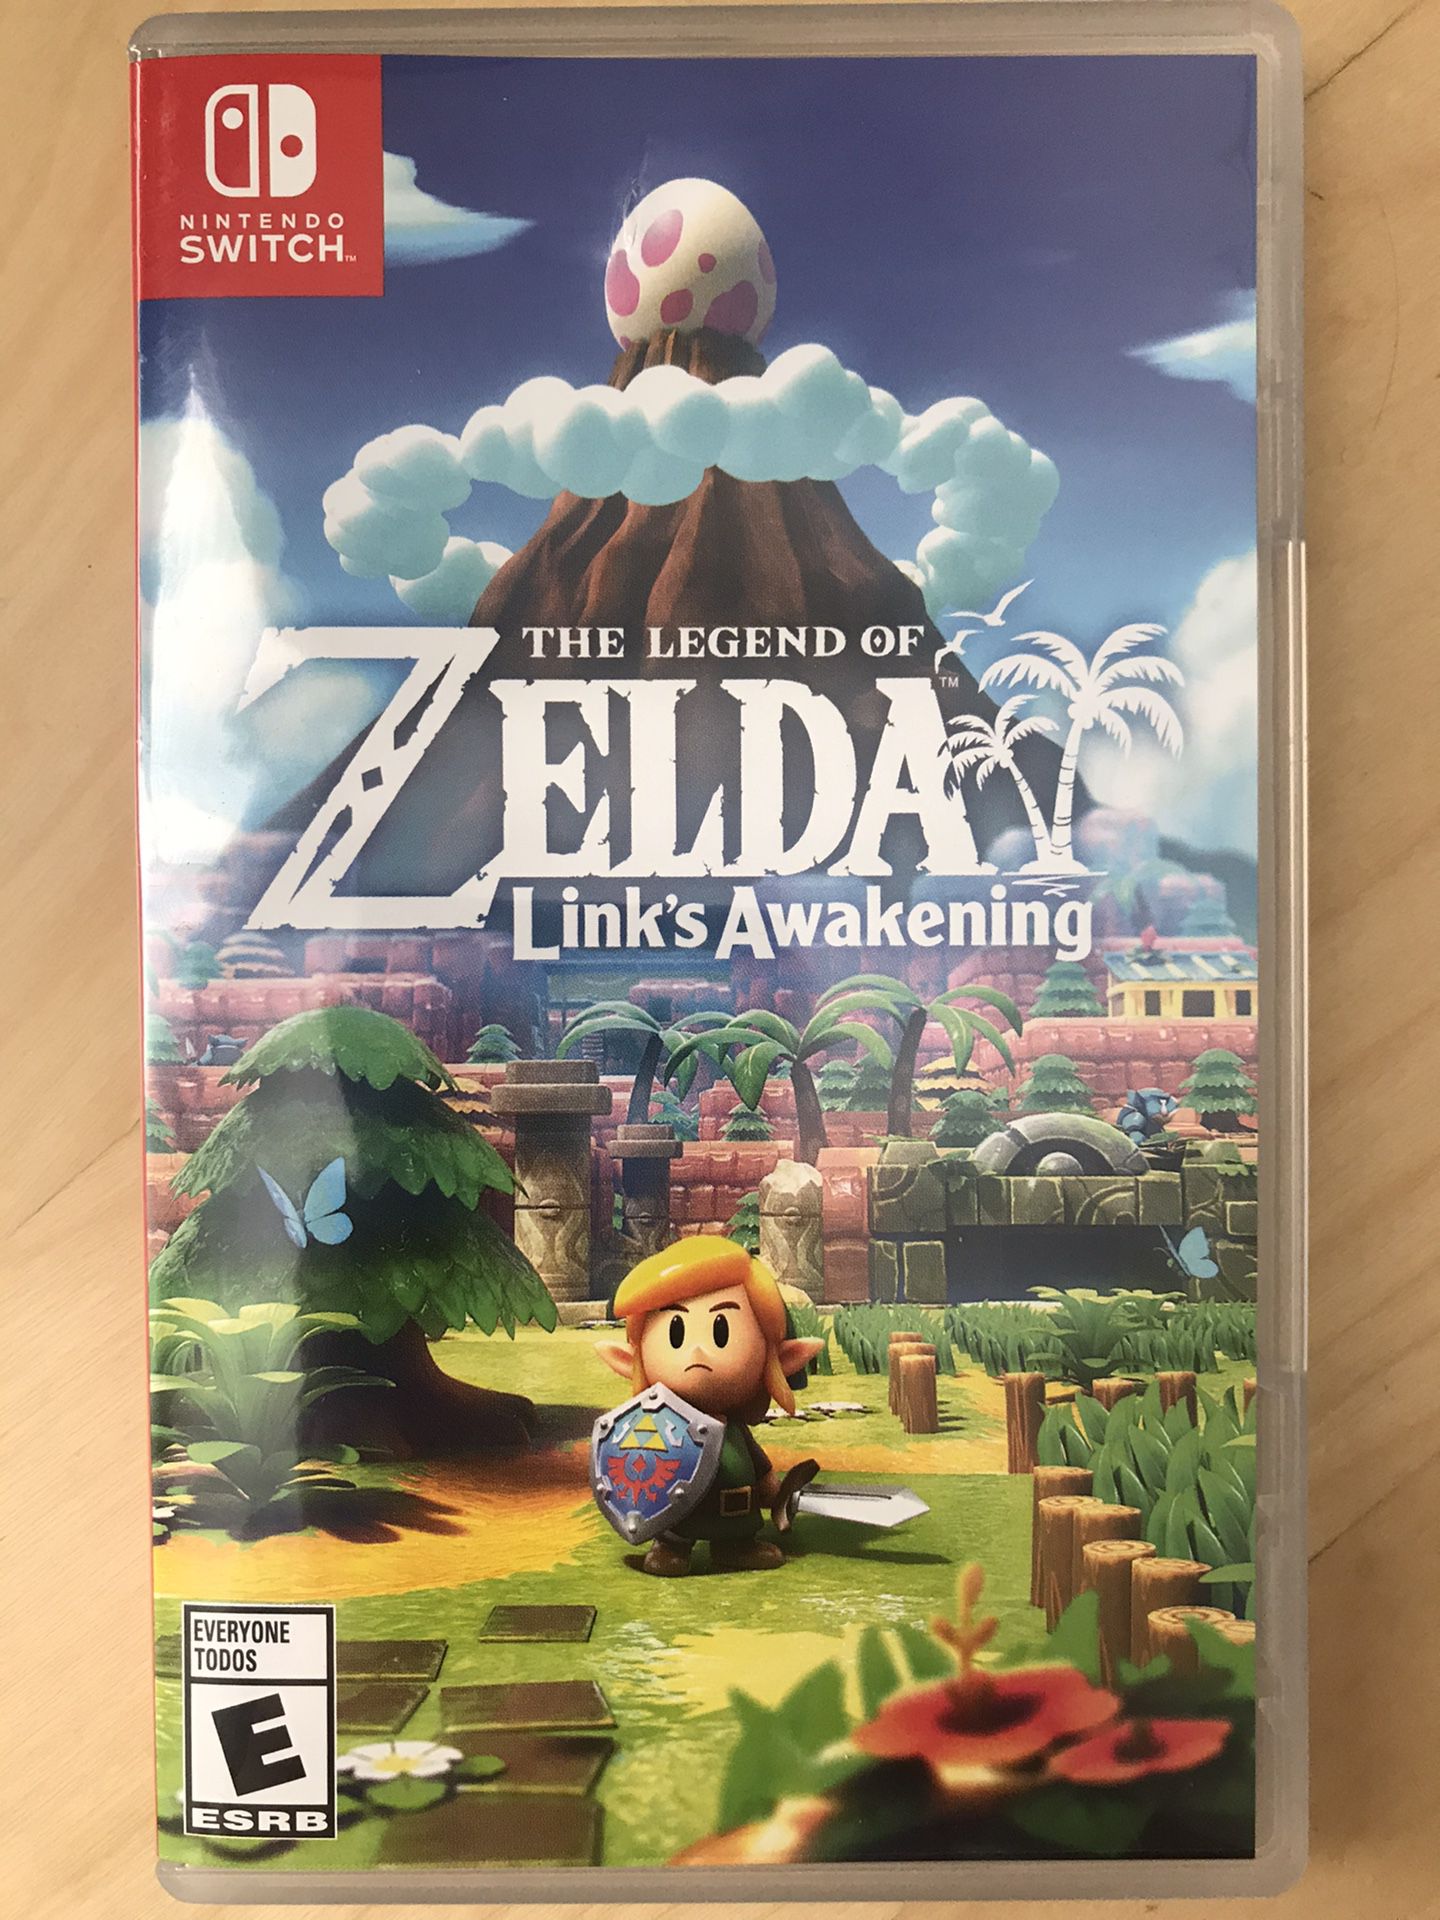 Link’s Awakening remake (Nintendo Switch, Legend of Zelda series)